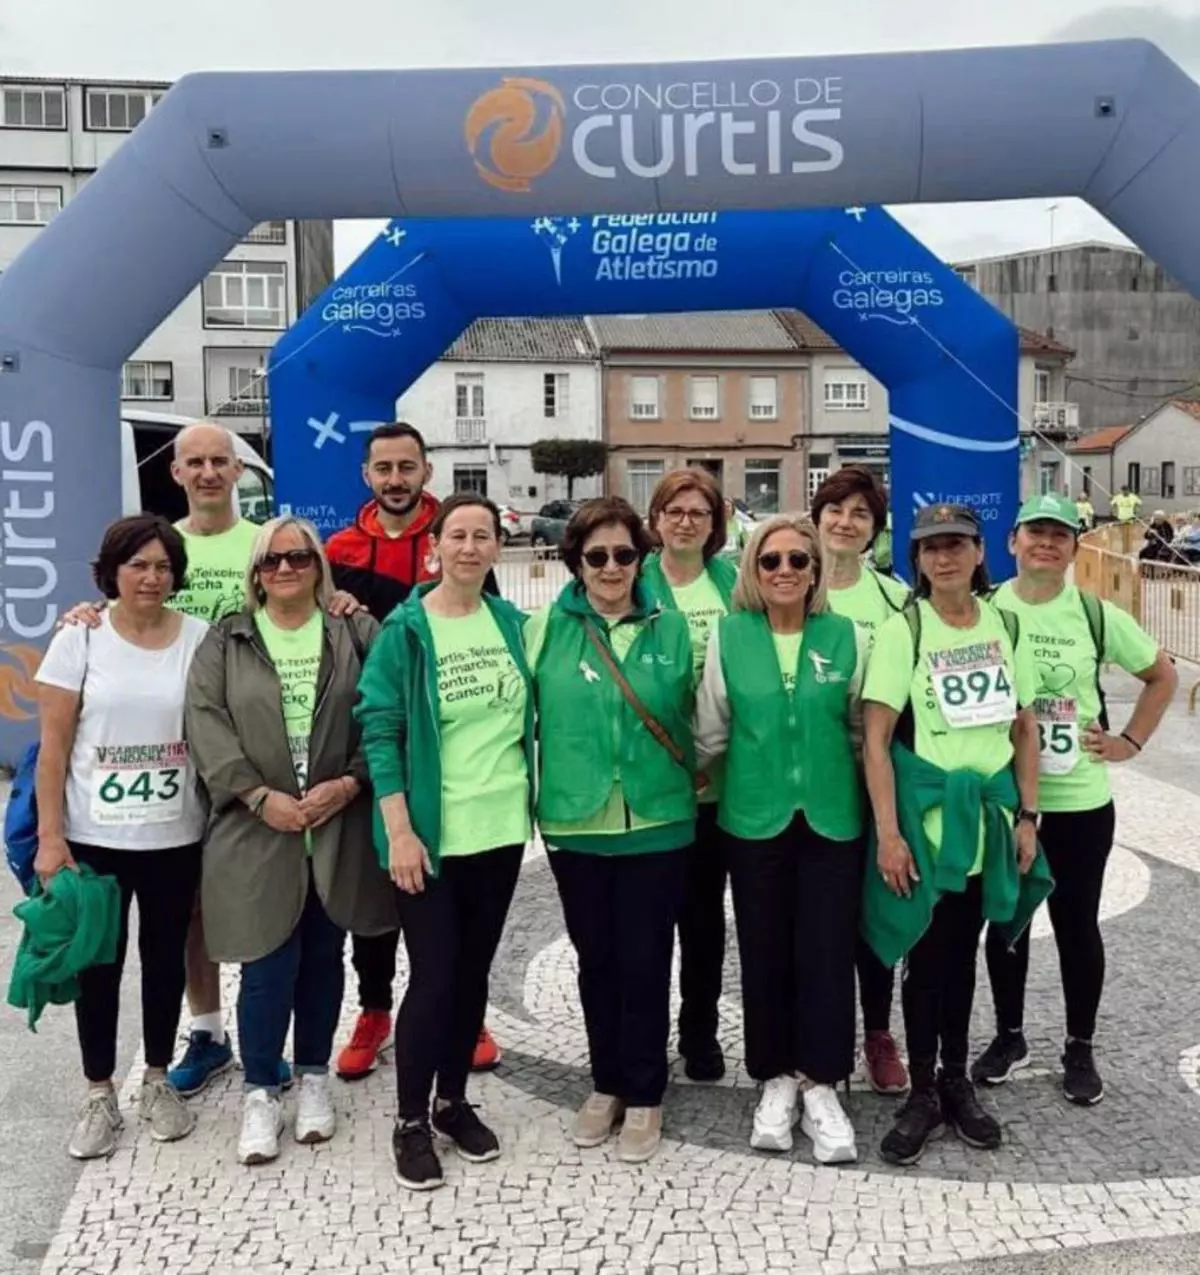 Más de 4.300 euros recaudados contra el cáncer en Curtis